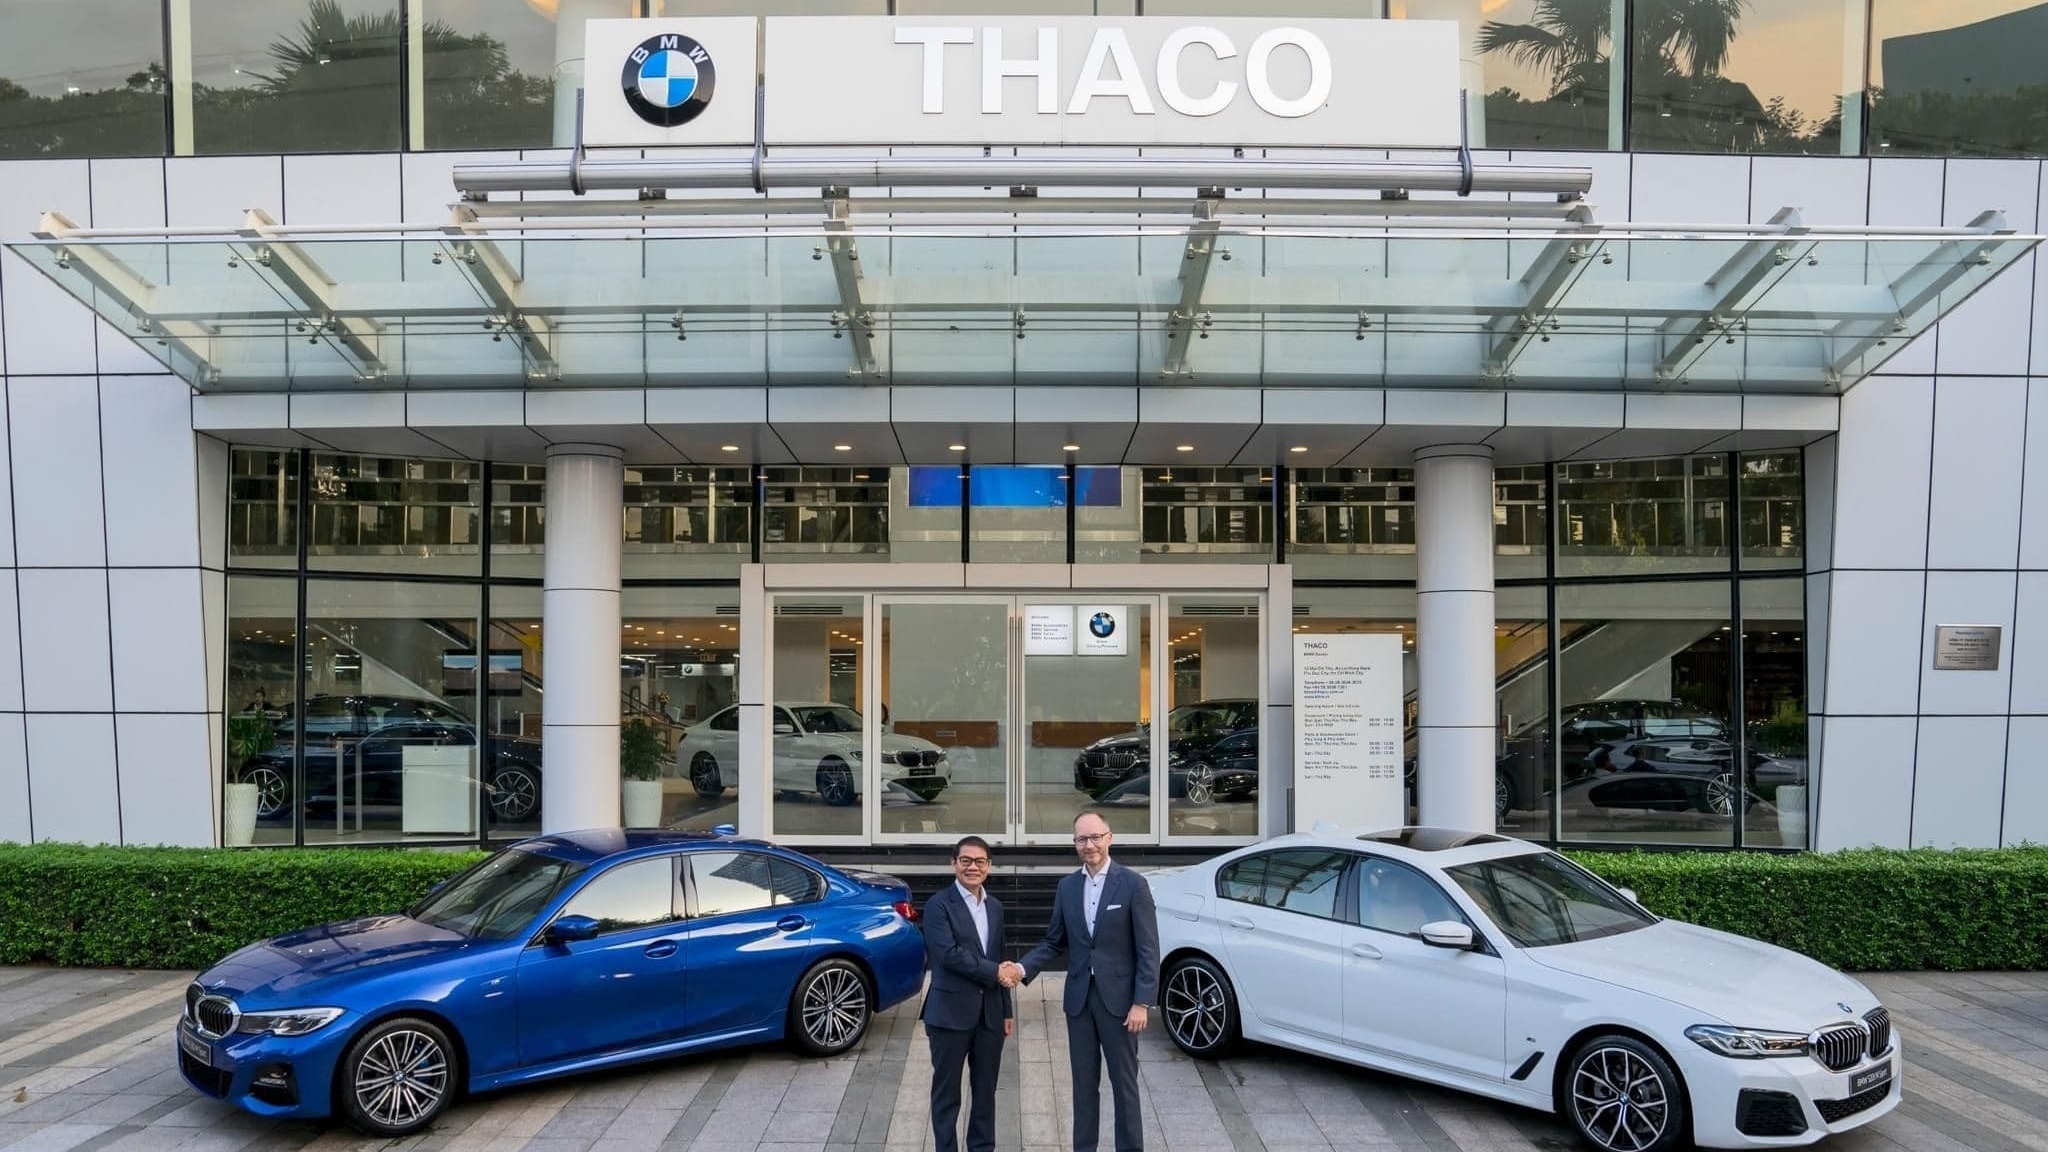 THACO chính thức xác nhận sẽ lắp ráp BMW tại Việt Nam